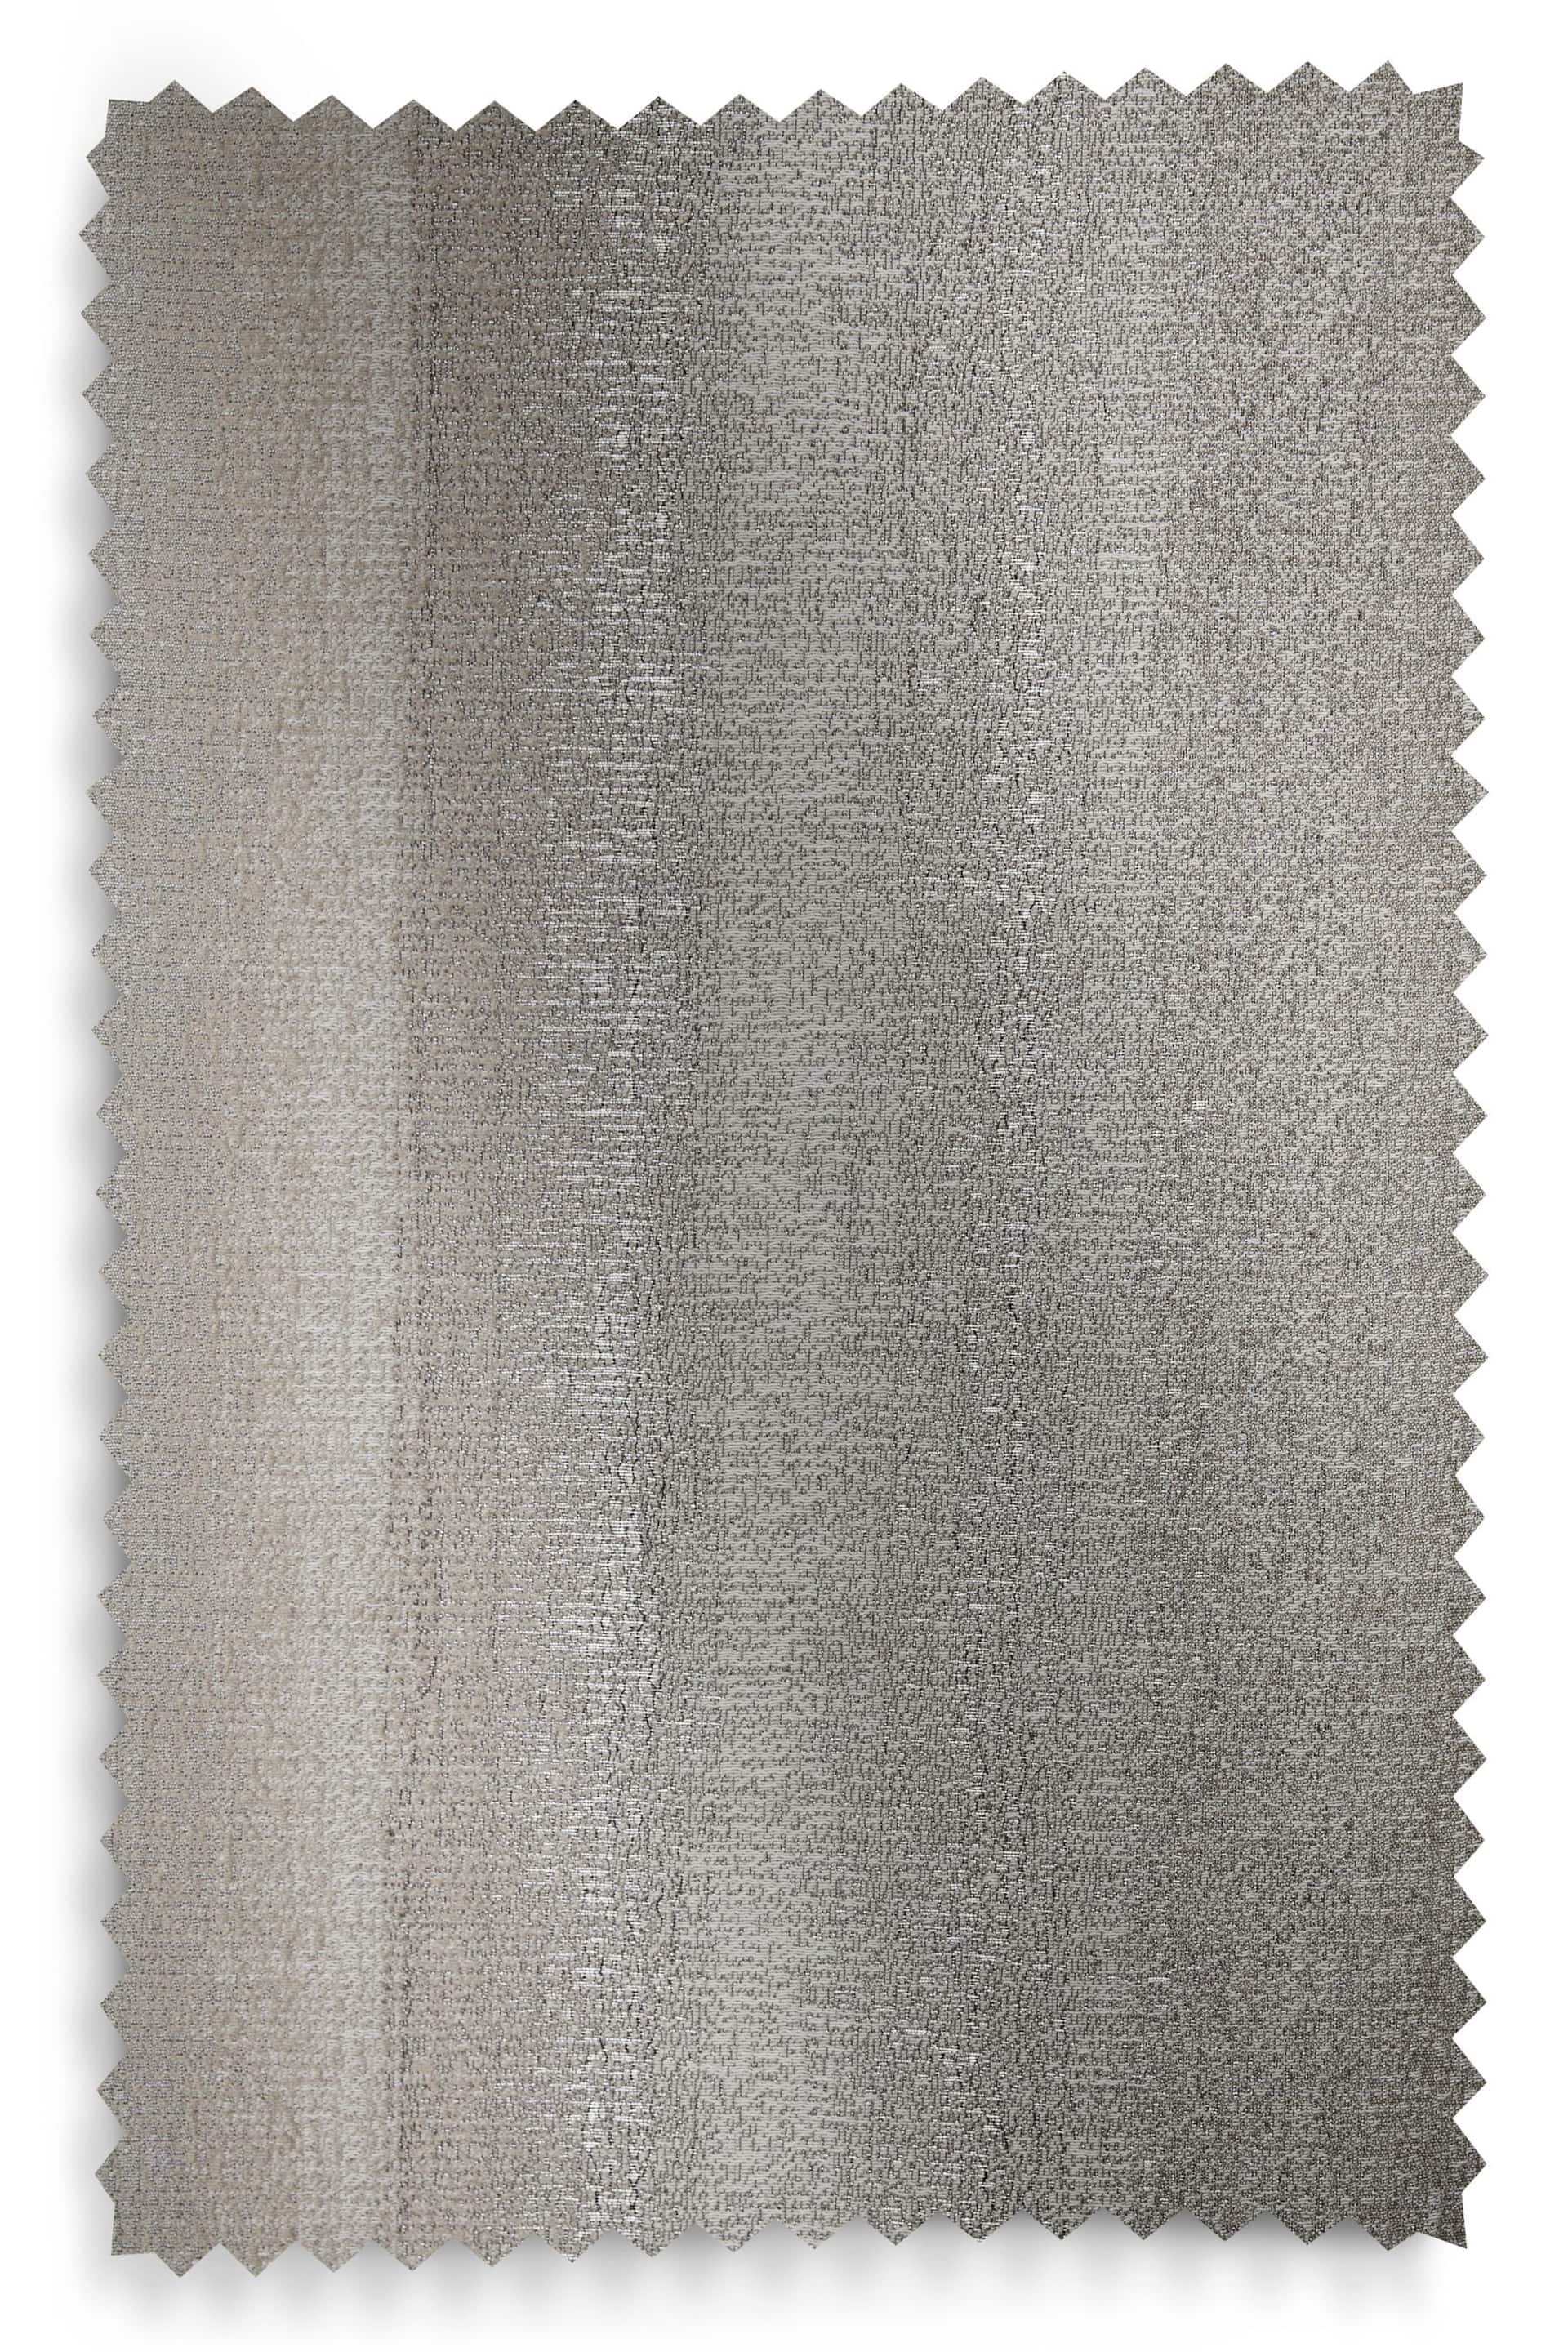 Silver Grey Metallic Stripe Eyelet Blackout/Thermal Curtains - Image 8 of 8